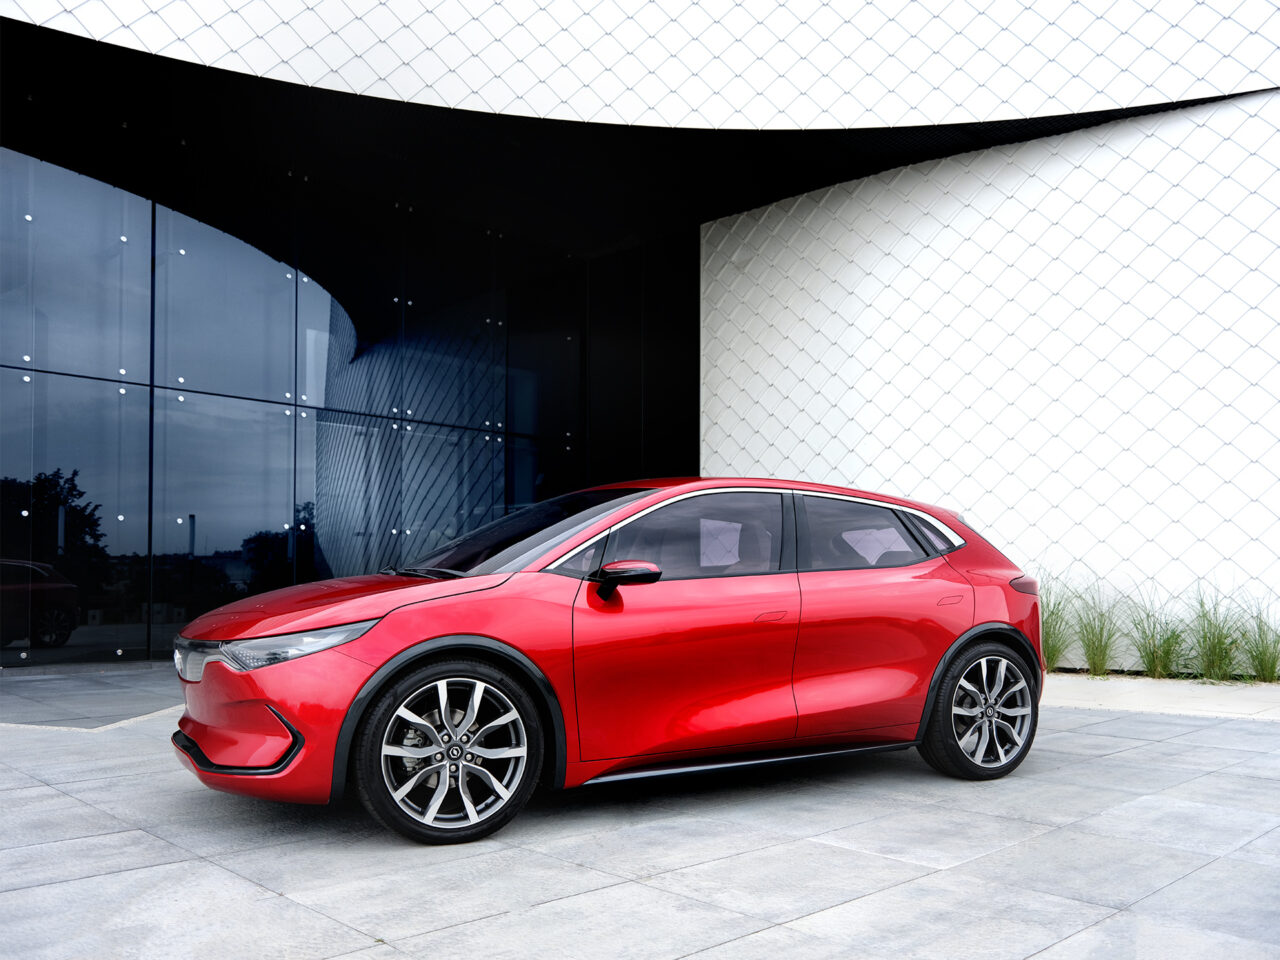 Czerwony samochód elektryczny Izera zaparkowany przed budynkiem ze szklaną fasadą i białymi, geometrycznymi elementami.